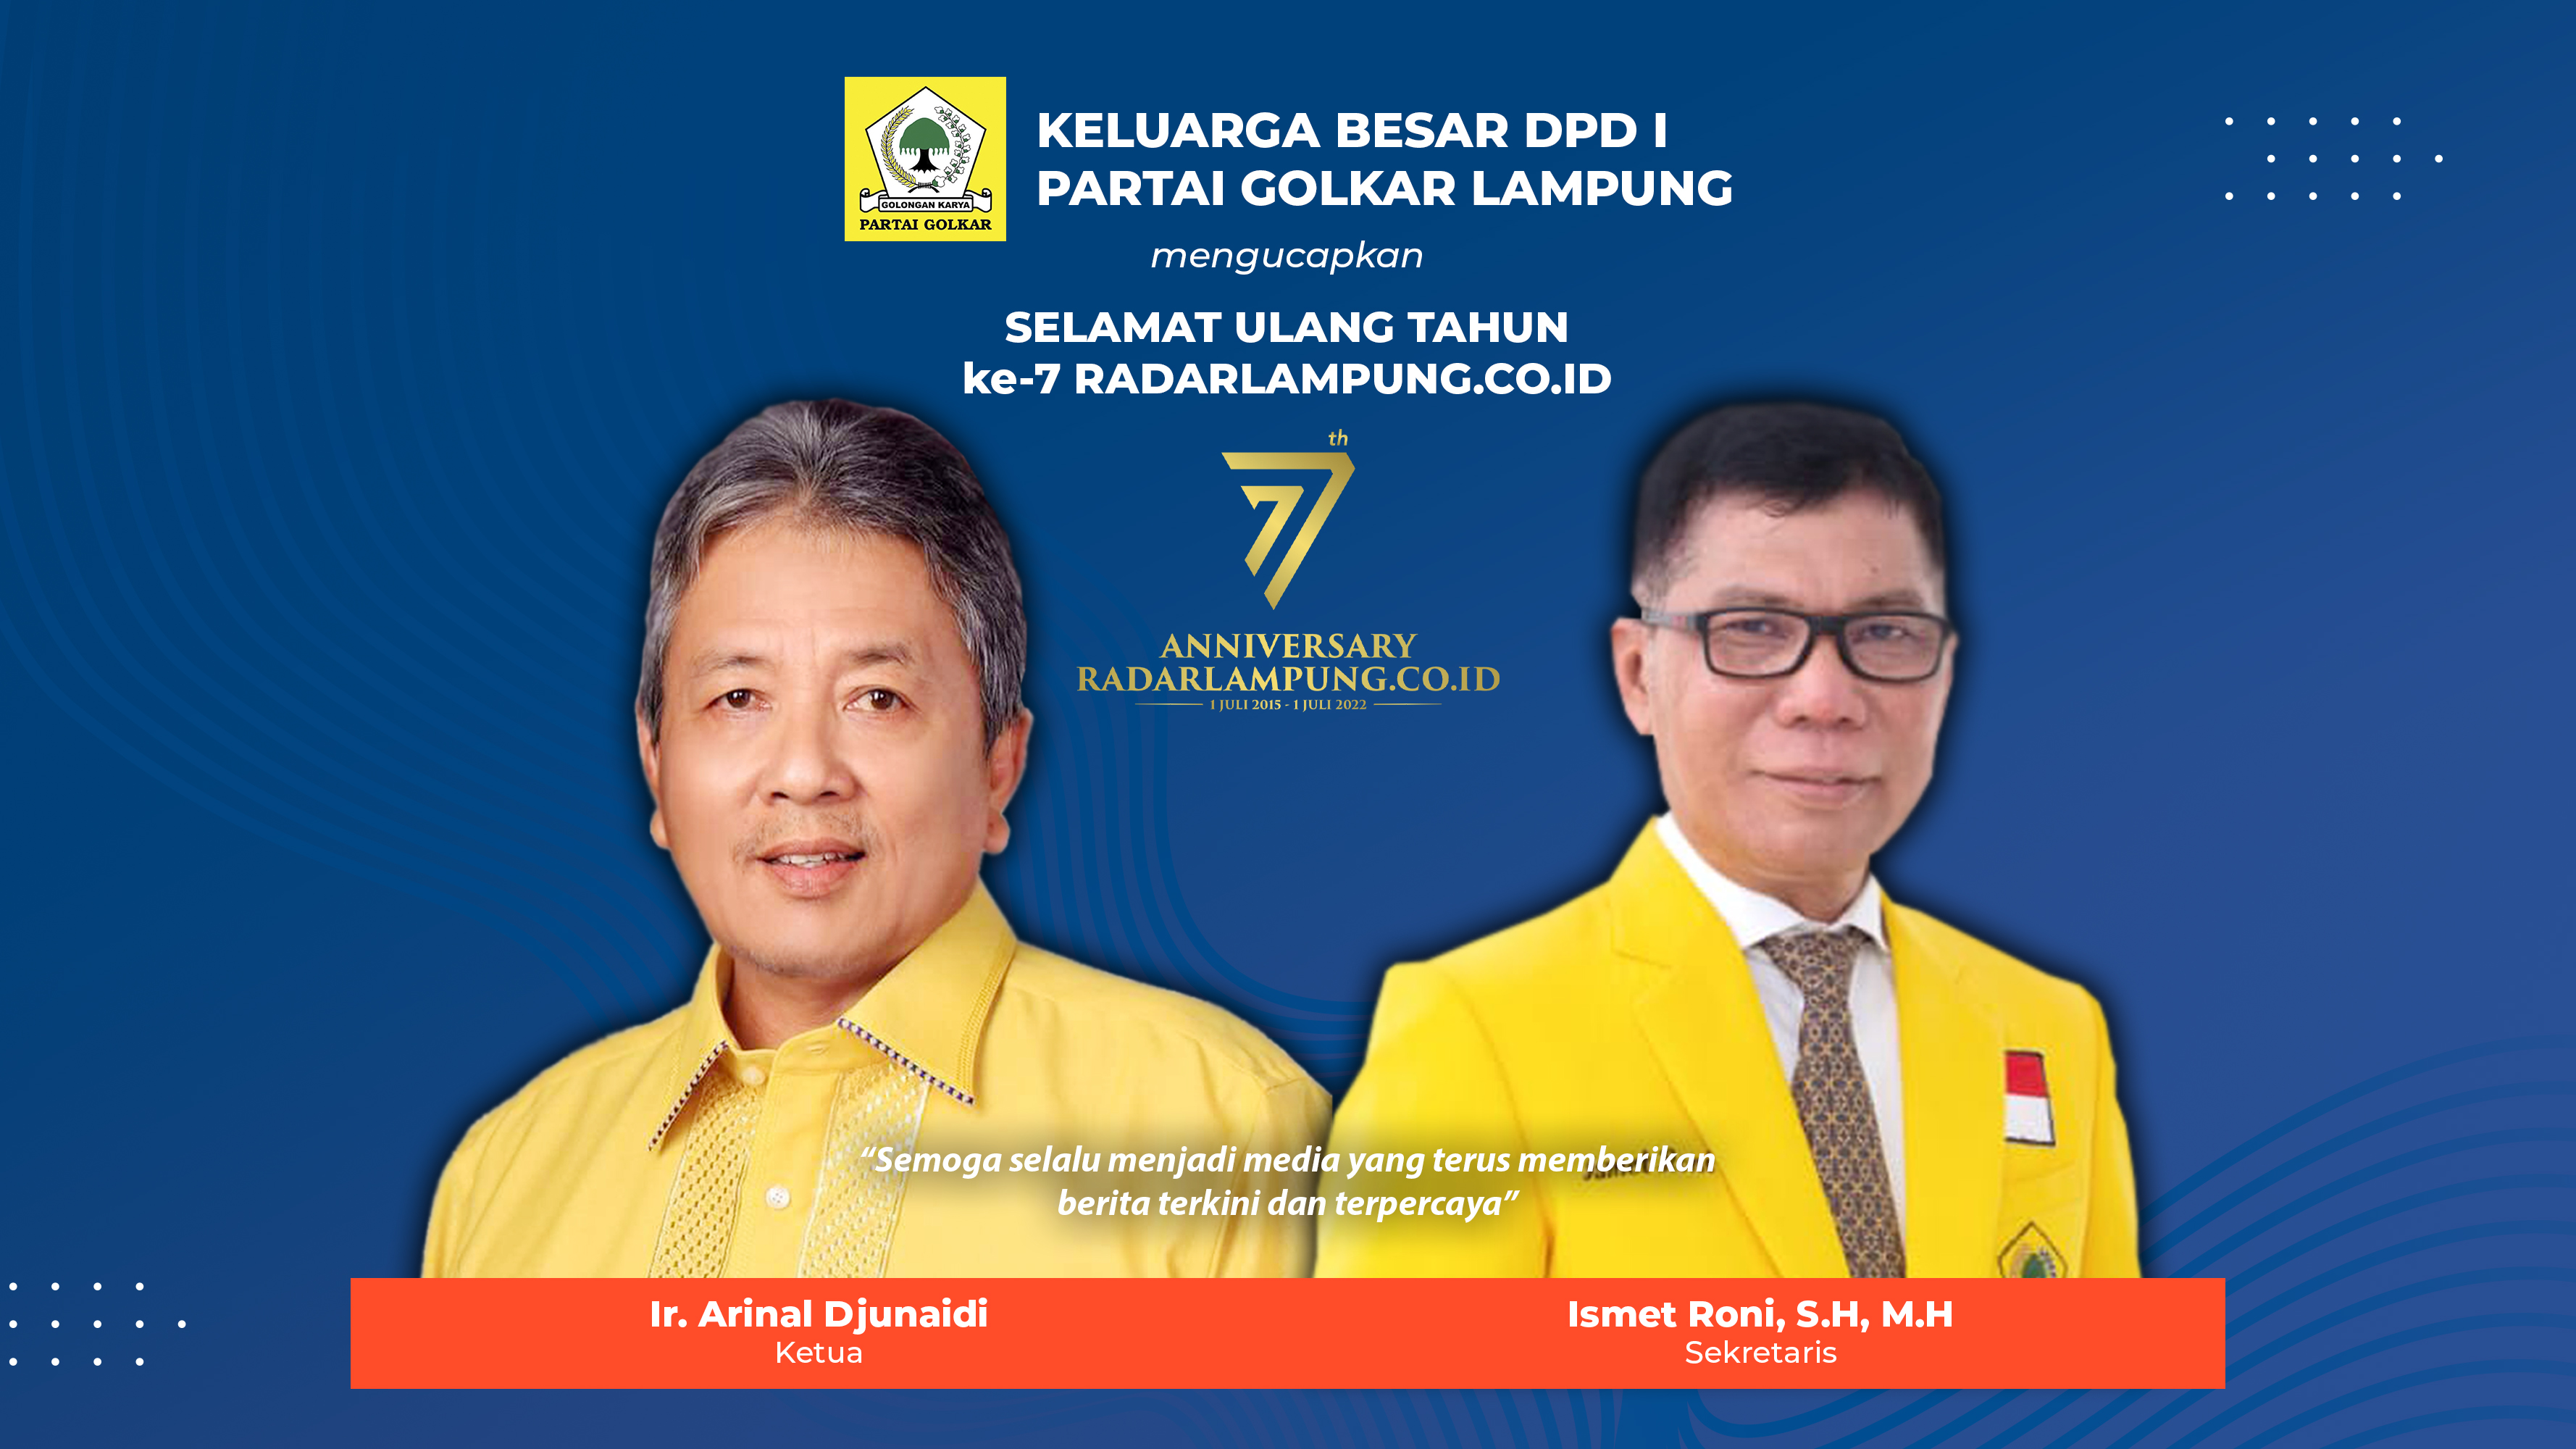 DPD I Partai Golkar Lampung Mengucapkan Selamat Ulang Tahun ke-7 Radarlampung.co.id